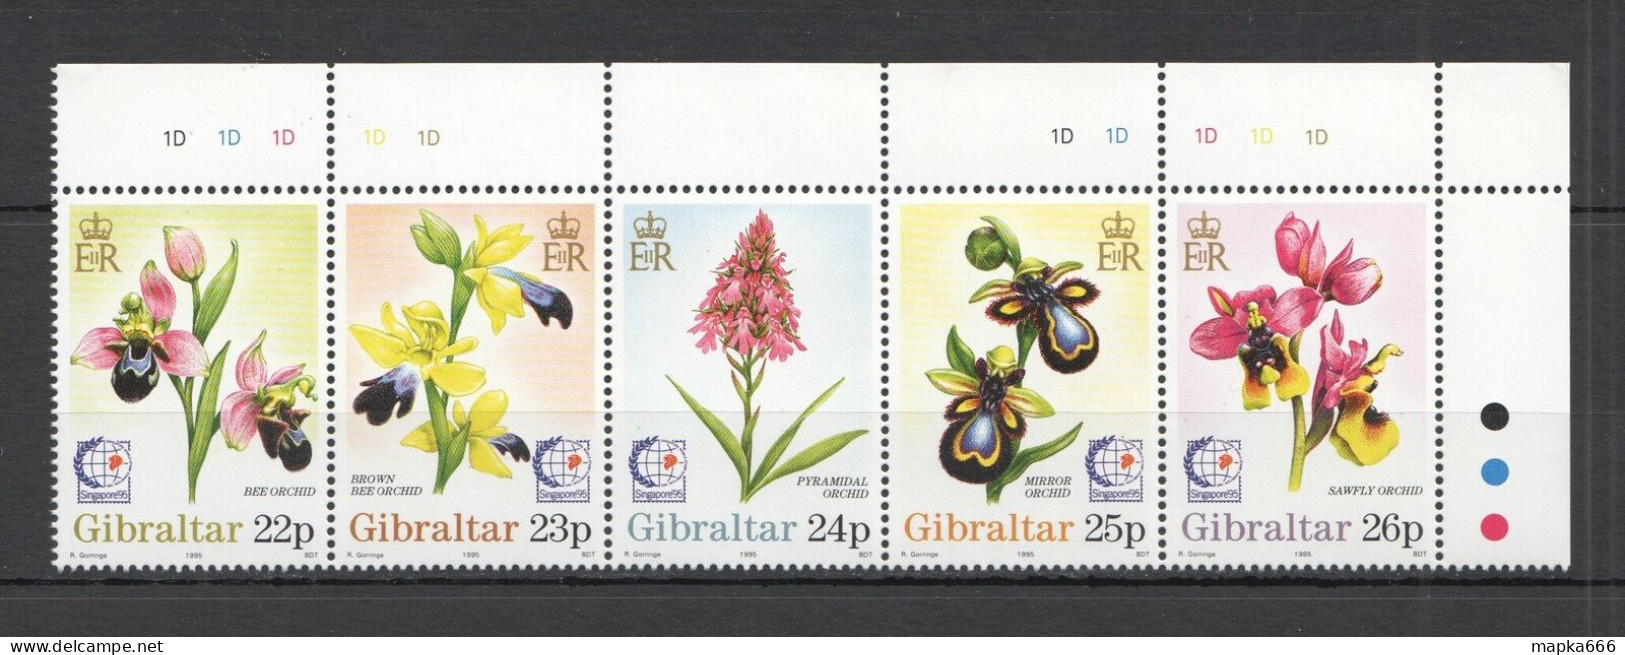 B0996 1995 Gibraltar Flora Nature Plants Flowers Orchids 1Set Mnh - Orchidées